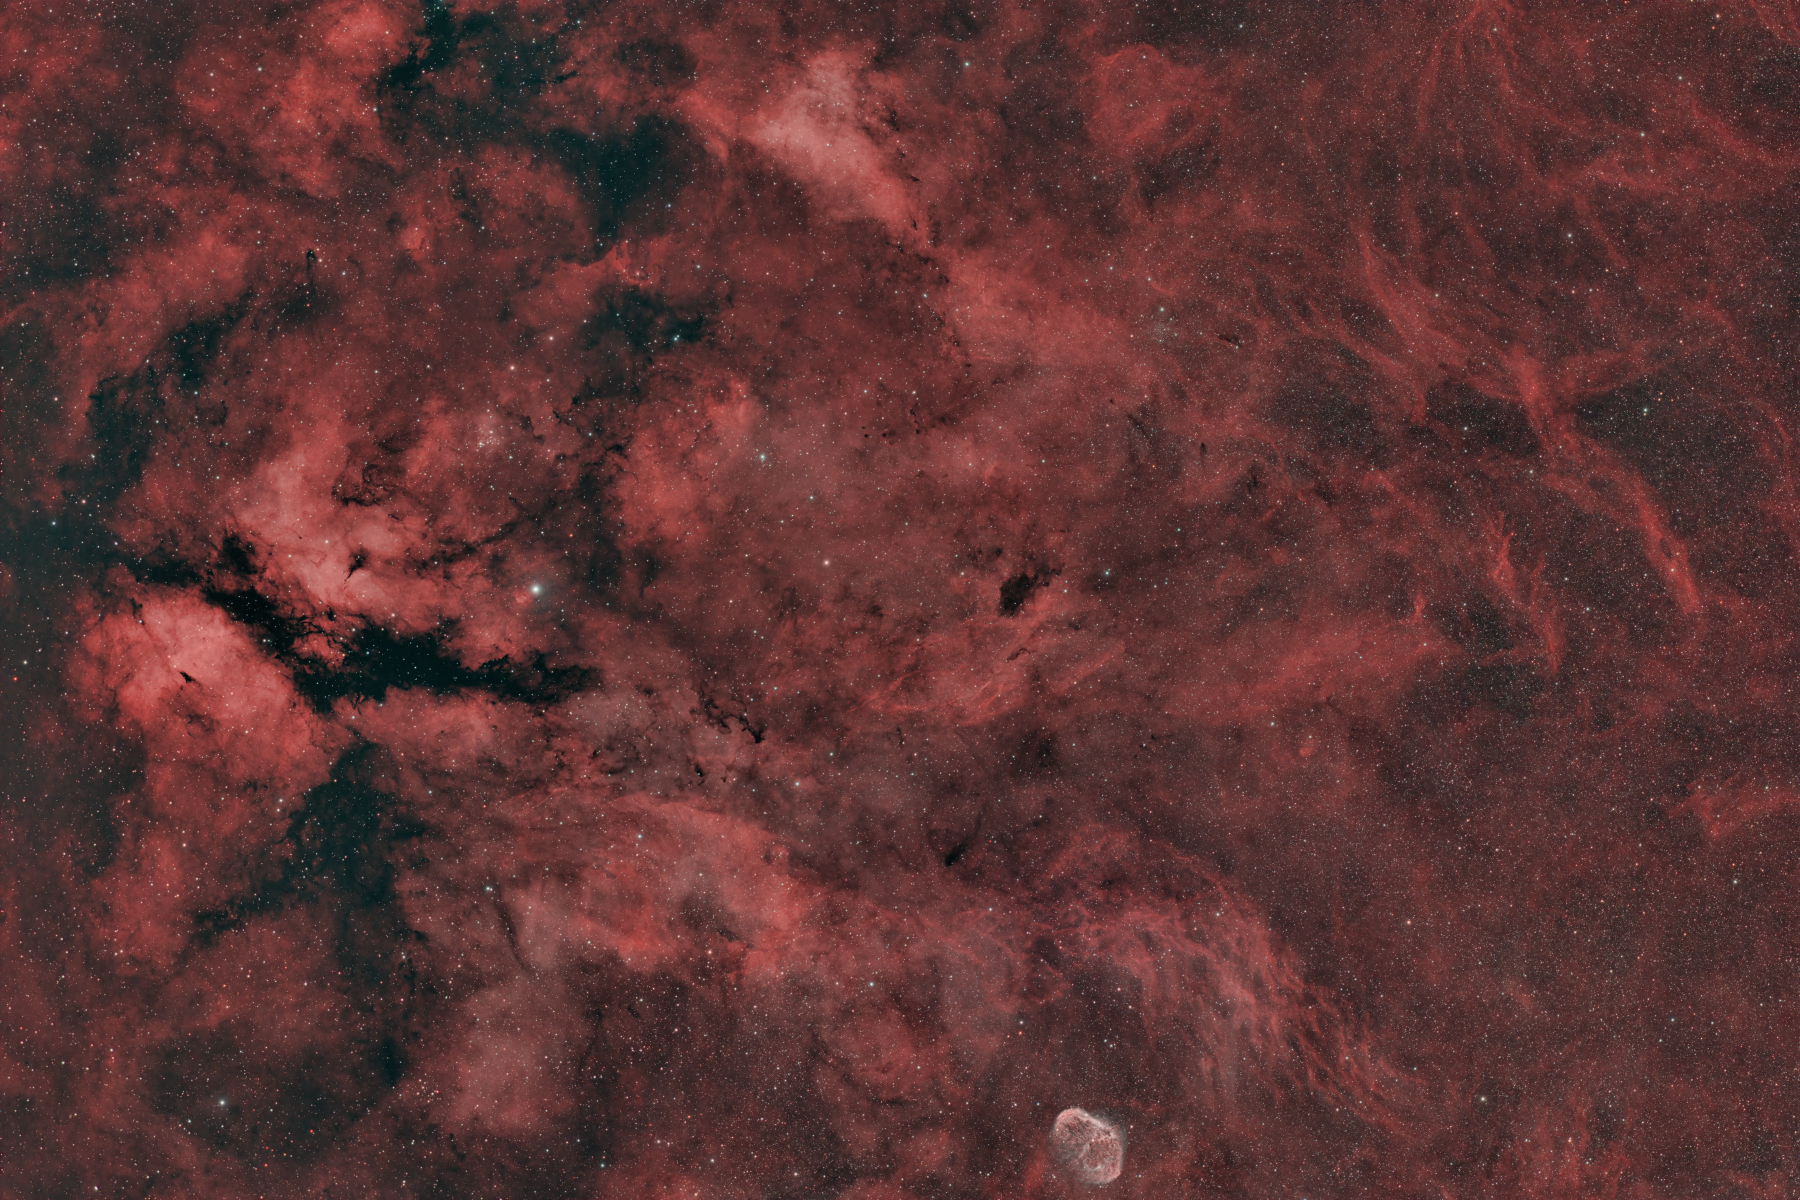 γ Cygni Nebula